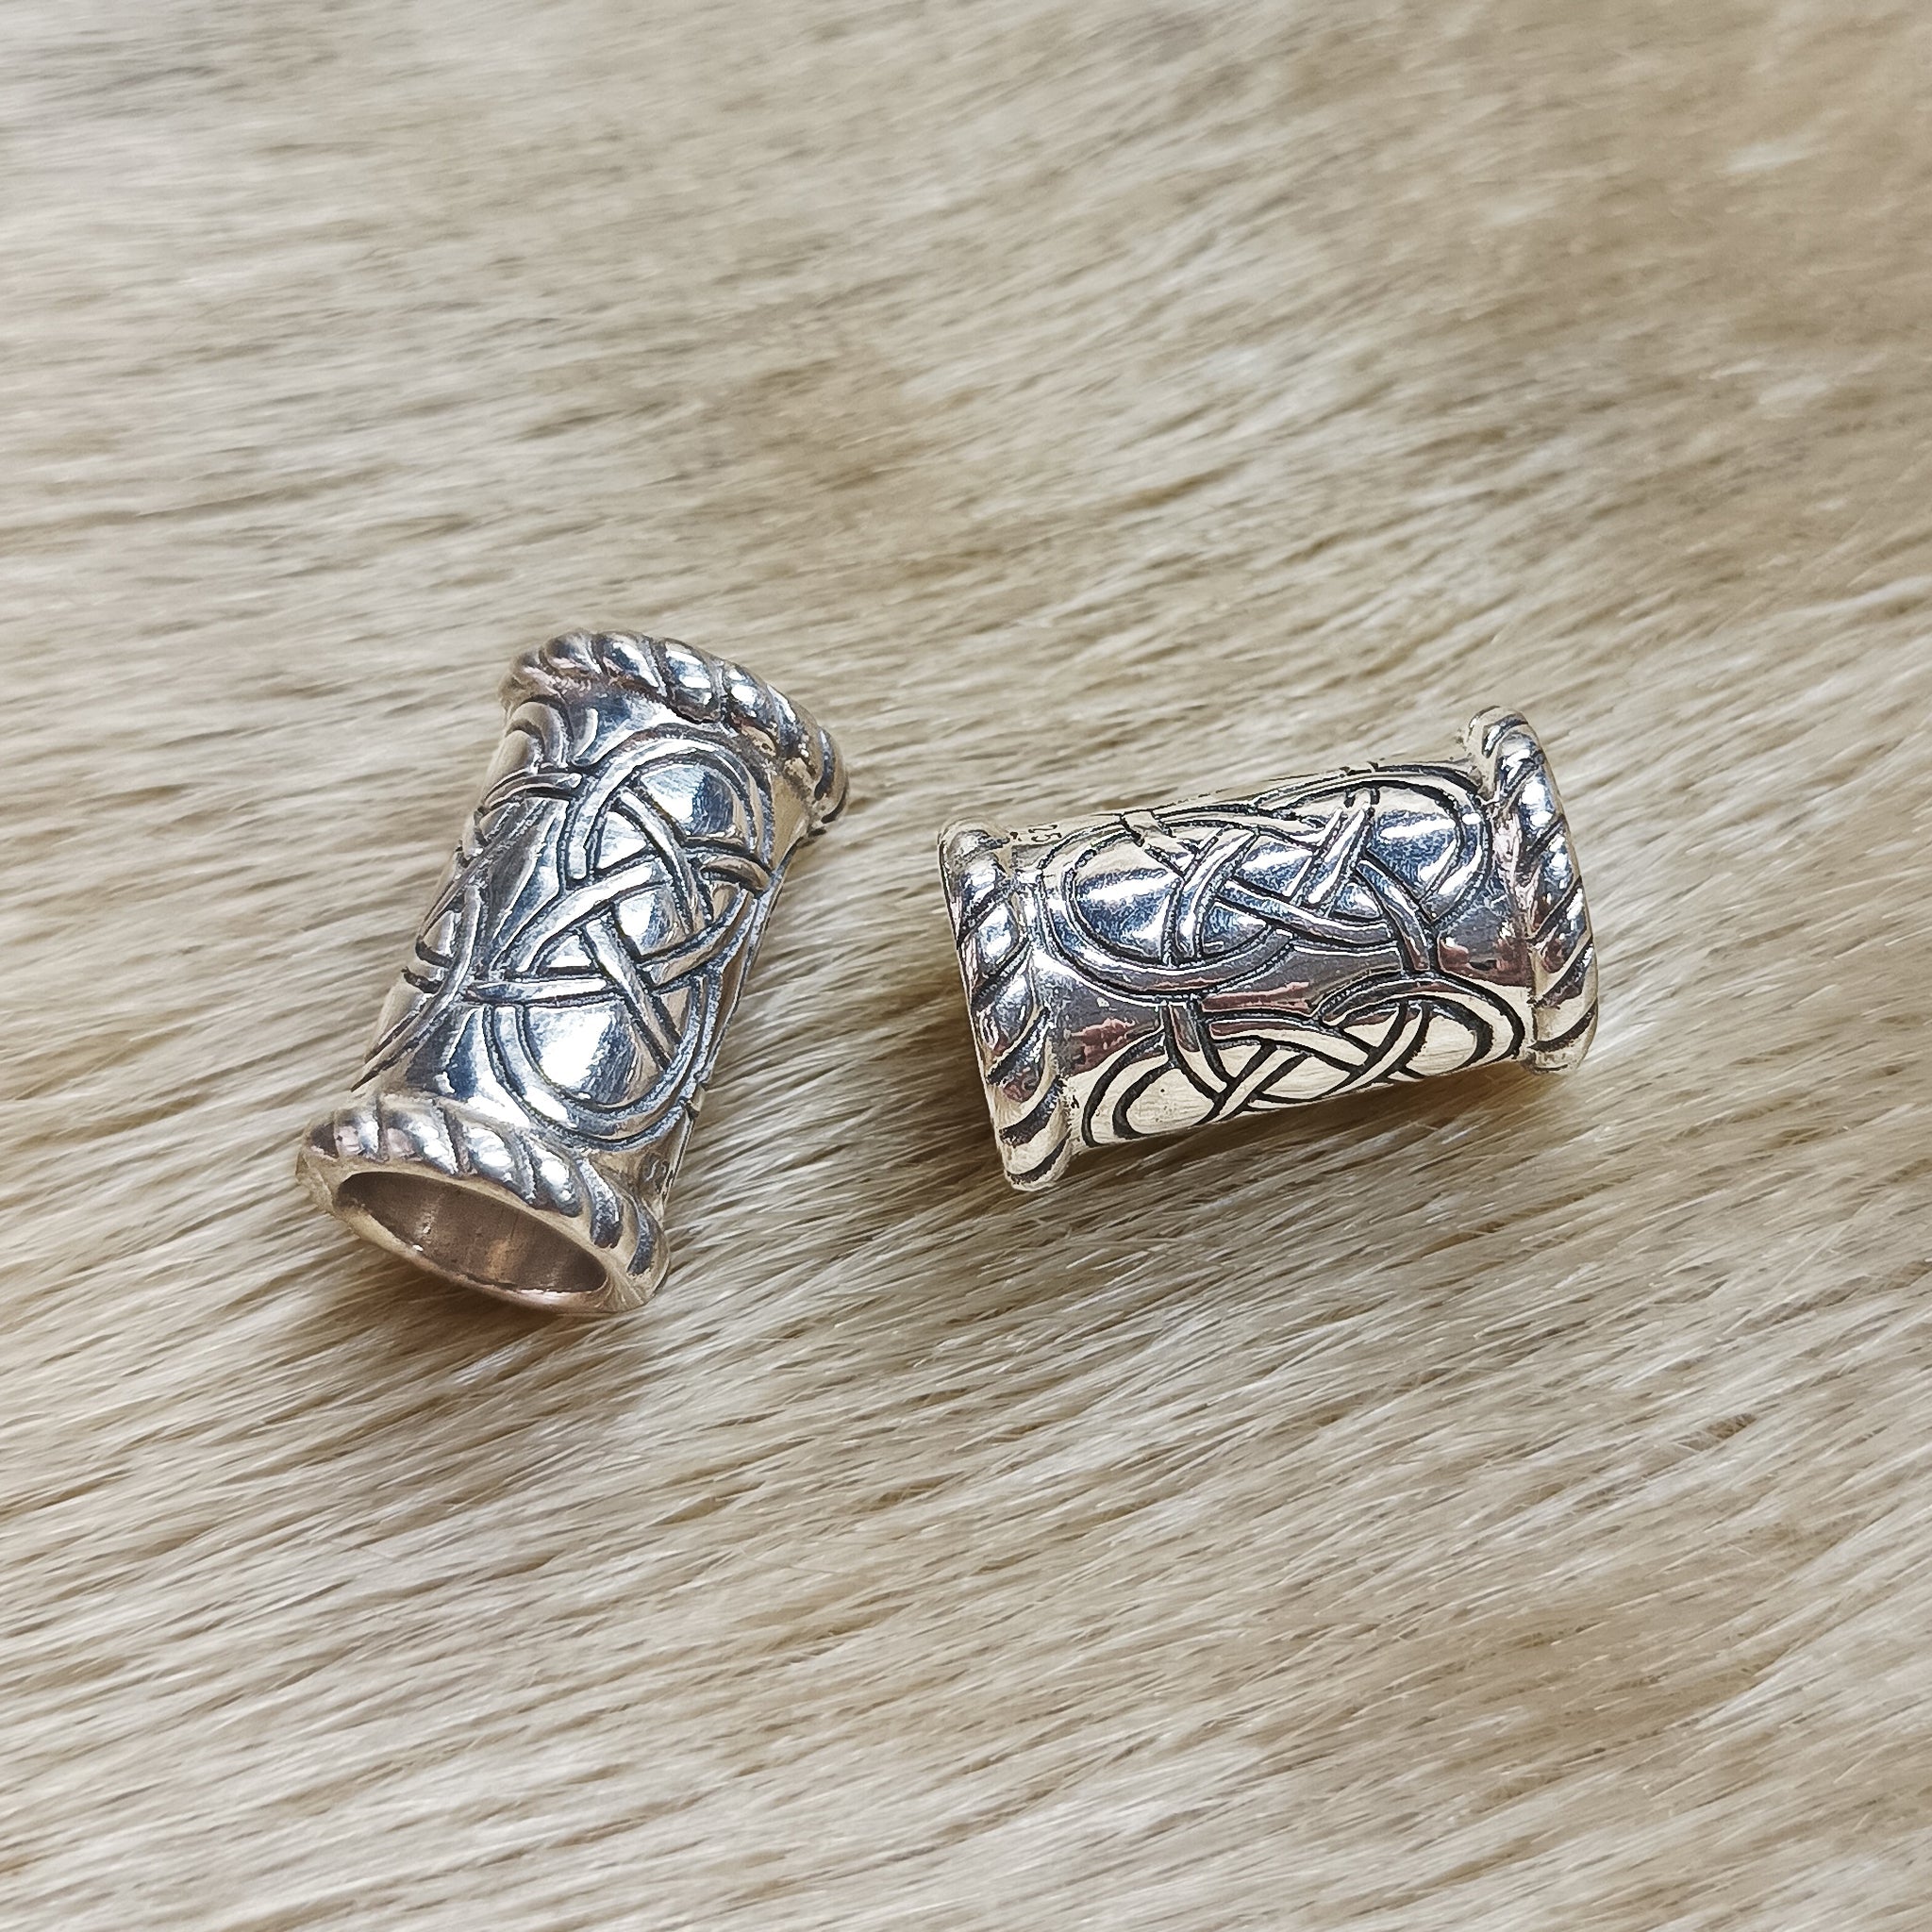 Medium Knotwork Viking Beard Rings in Sterling Silver